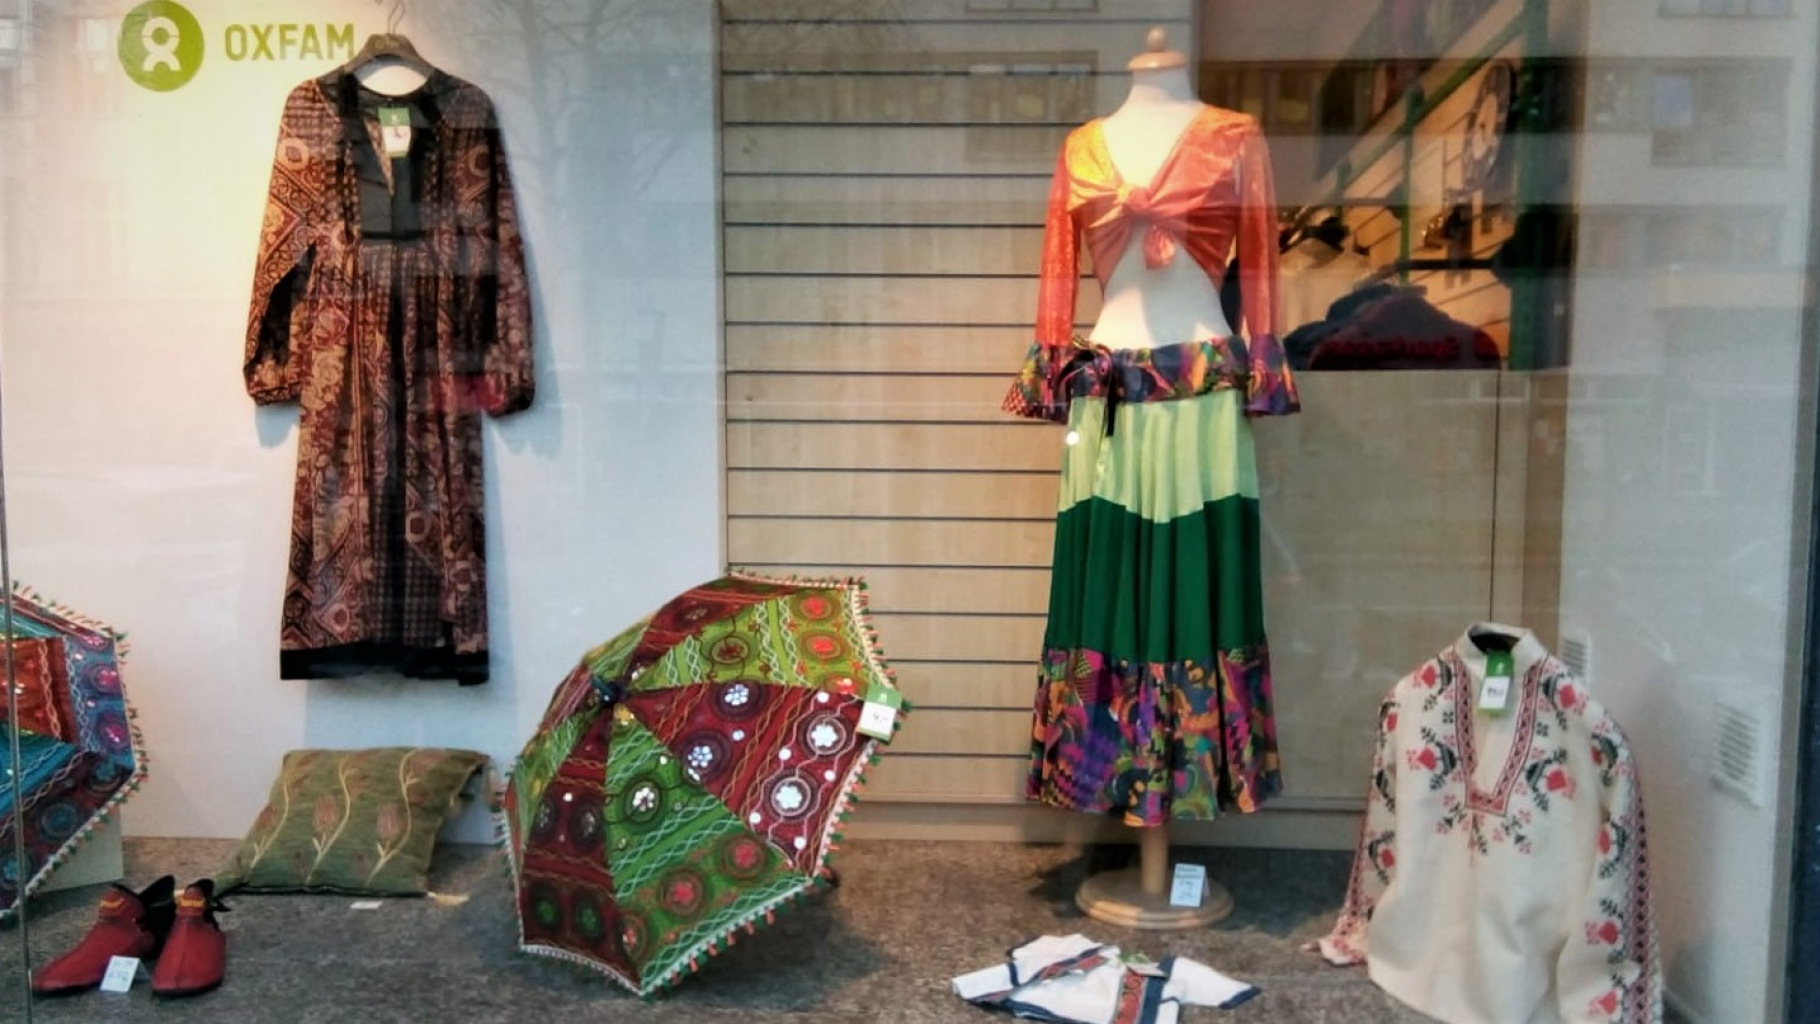 Folklore-Angebot im Schaufenster eines Oxfam Shops